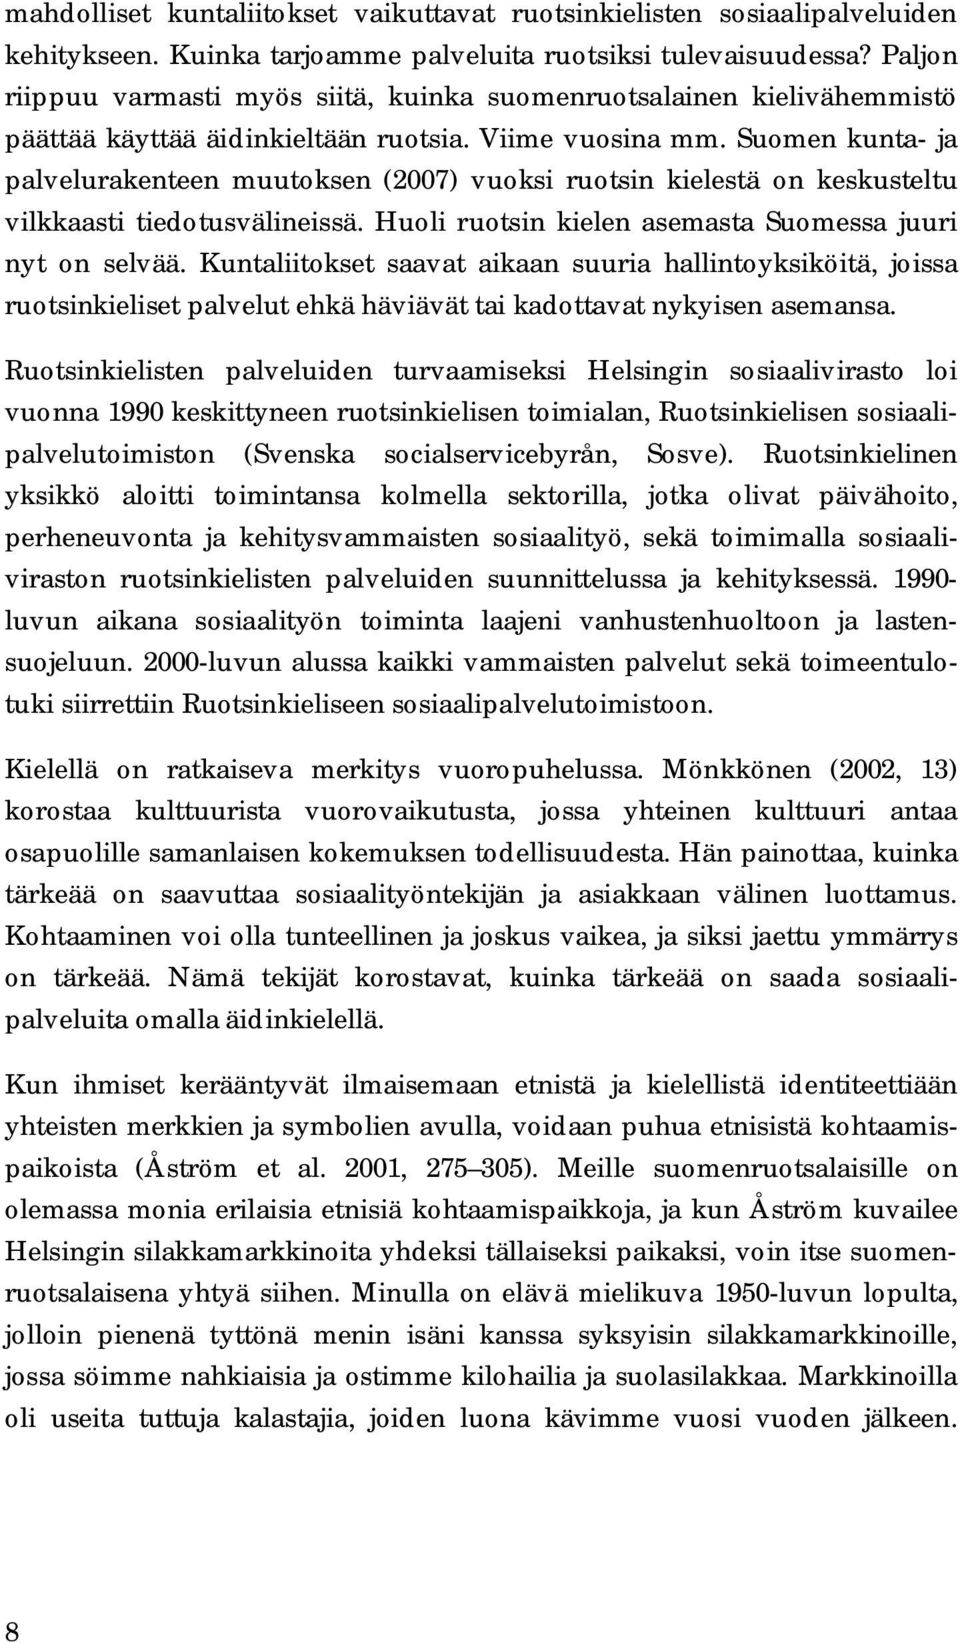 Suomen kunta- ja palvelurakenteen muutoksen (2007) vuoksi ruotsin kielestä on keskusteltu vilkkaasti tiedotusvälineissä. Huoli ruotsin kielen asemasta Suomessa juuri nyt on selvää.